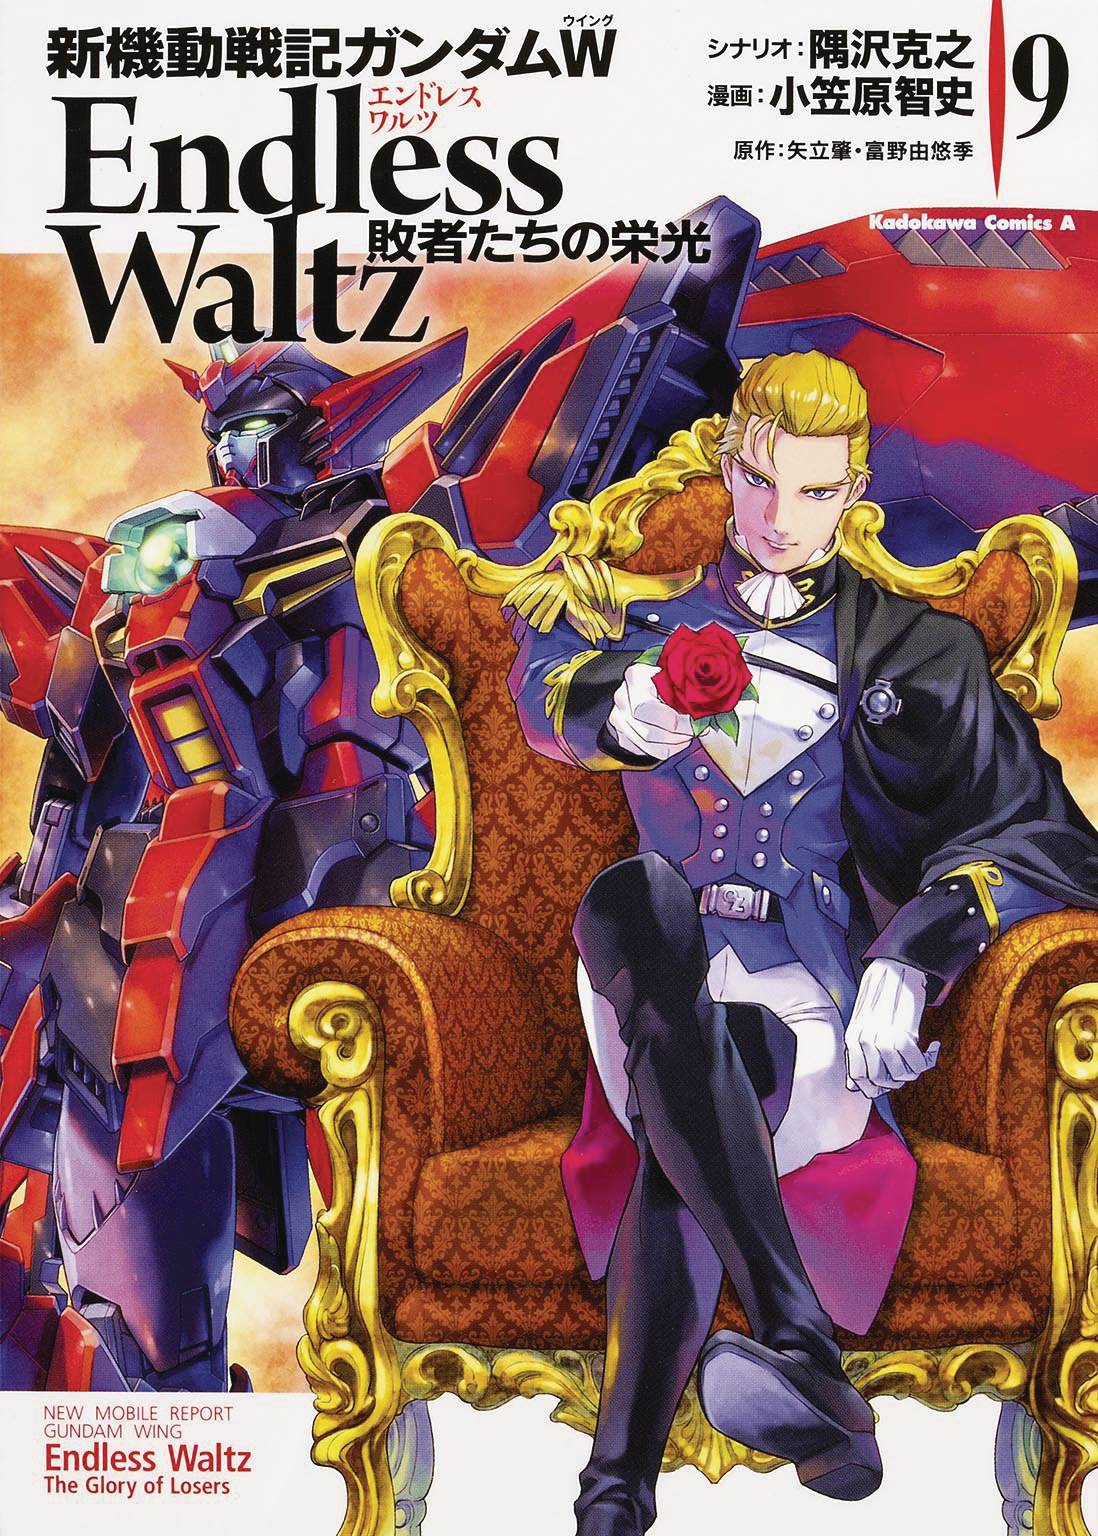 Mobile Suit Gundam Wing Manga Volume 9